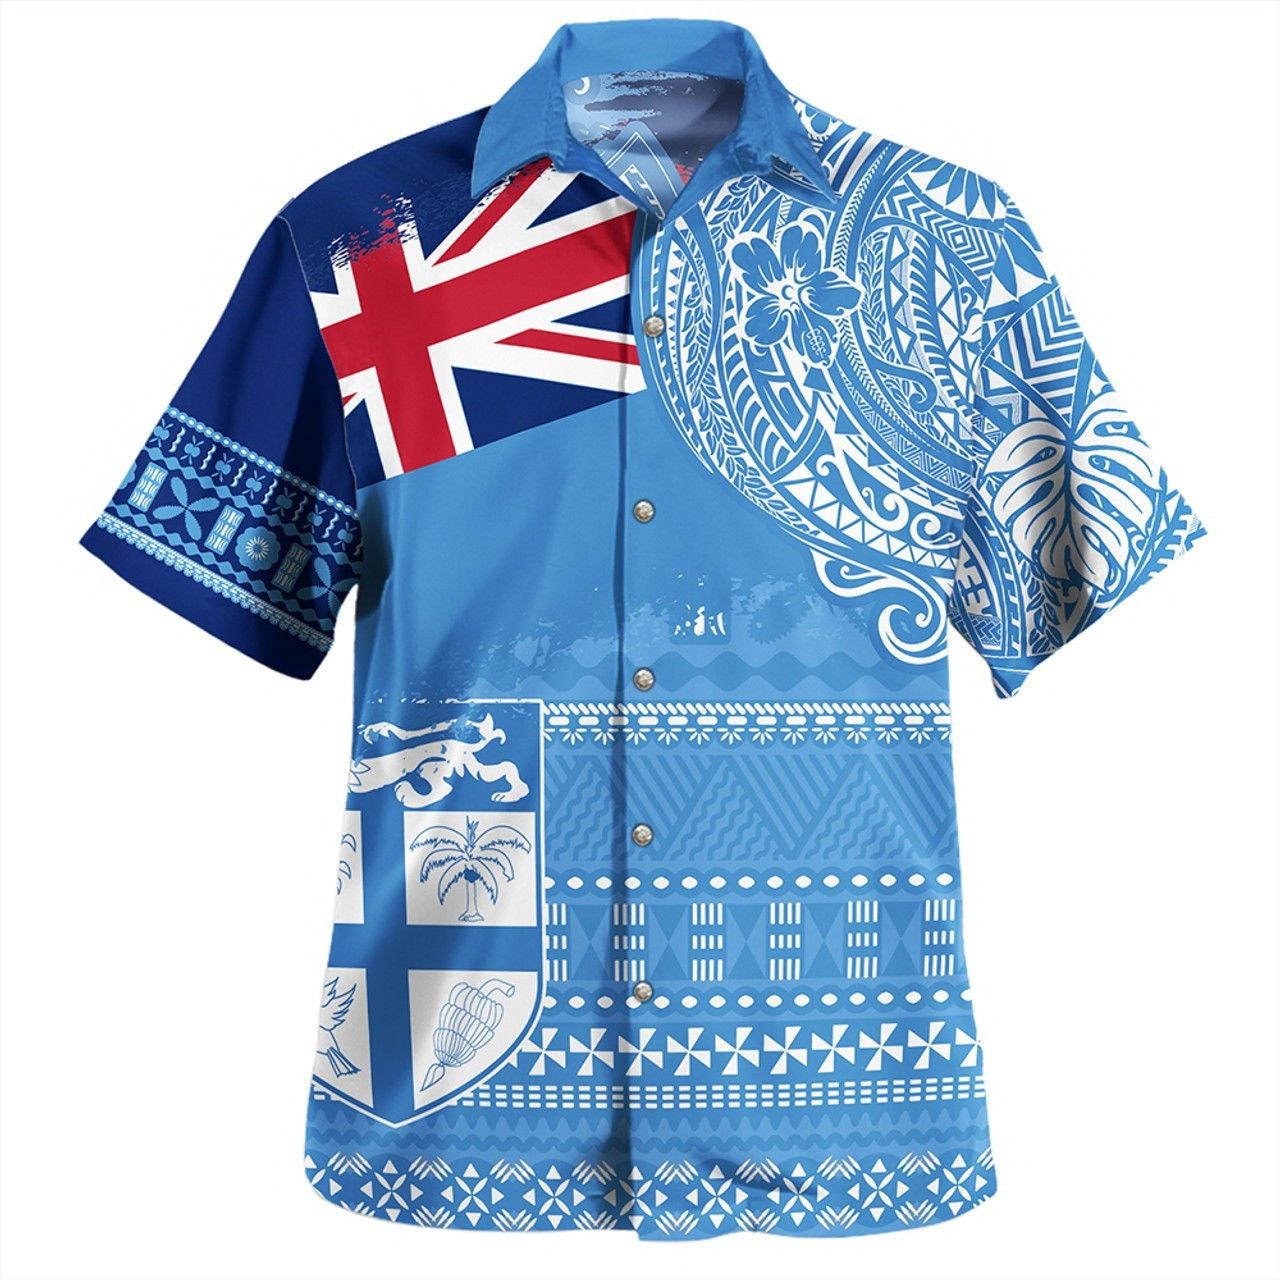 Fiji Combo Puletasi And Shirt Flag With Coat Of Arms